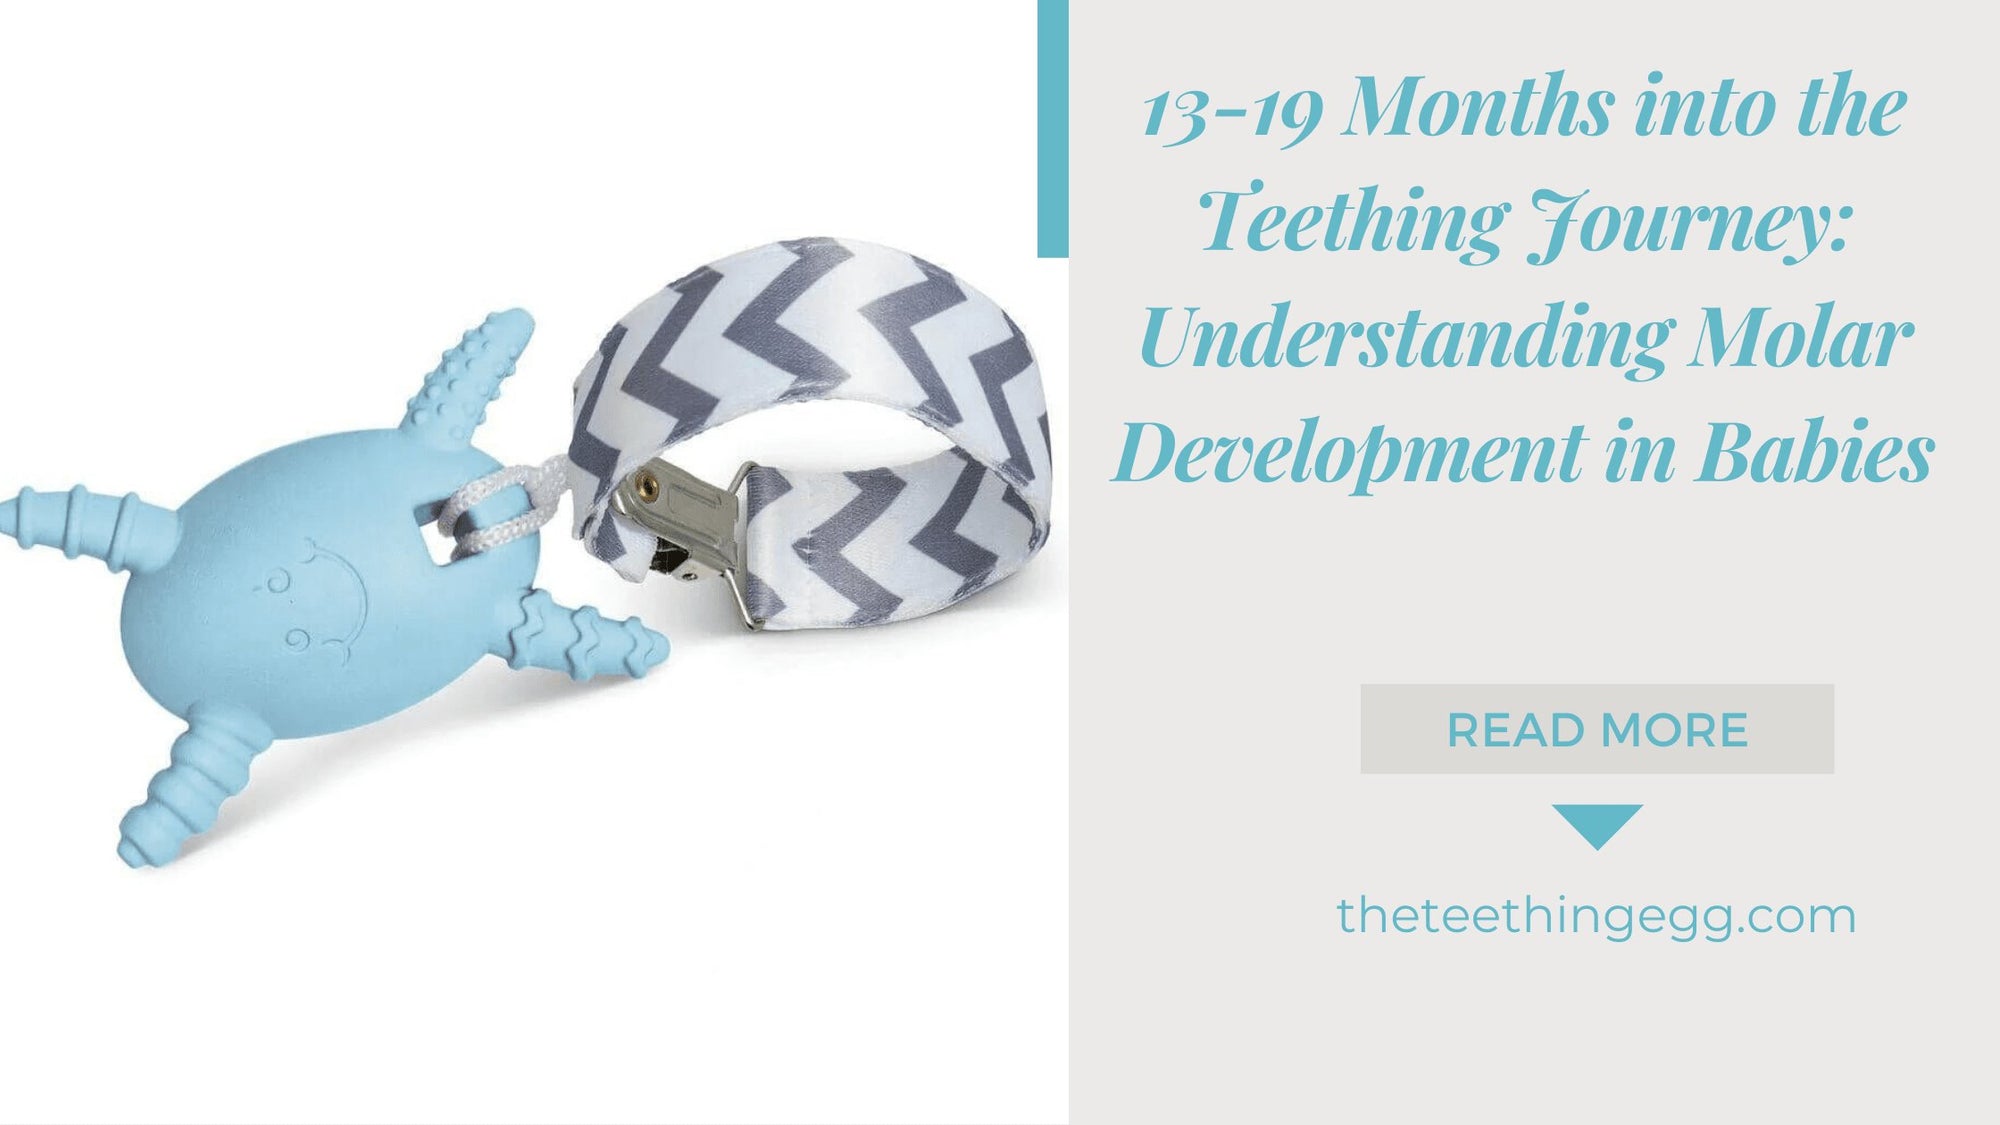 13-19 Months into the Teething Journey: Understanding Molar Development in Babies